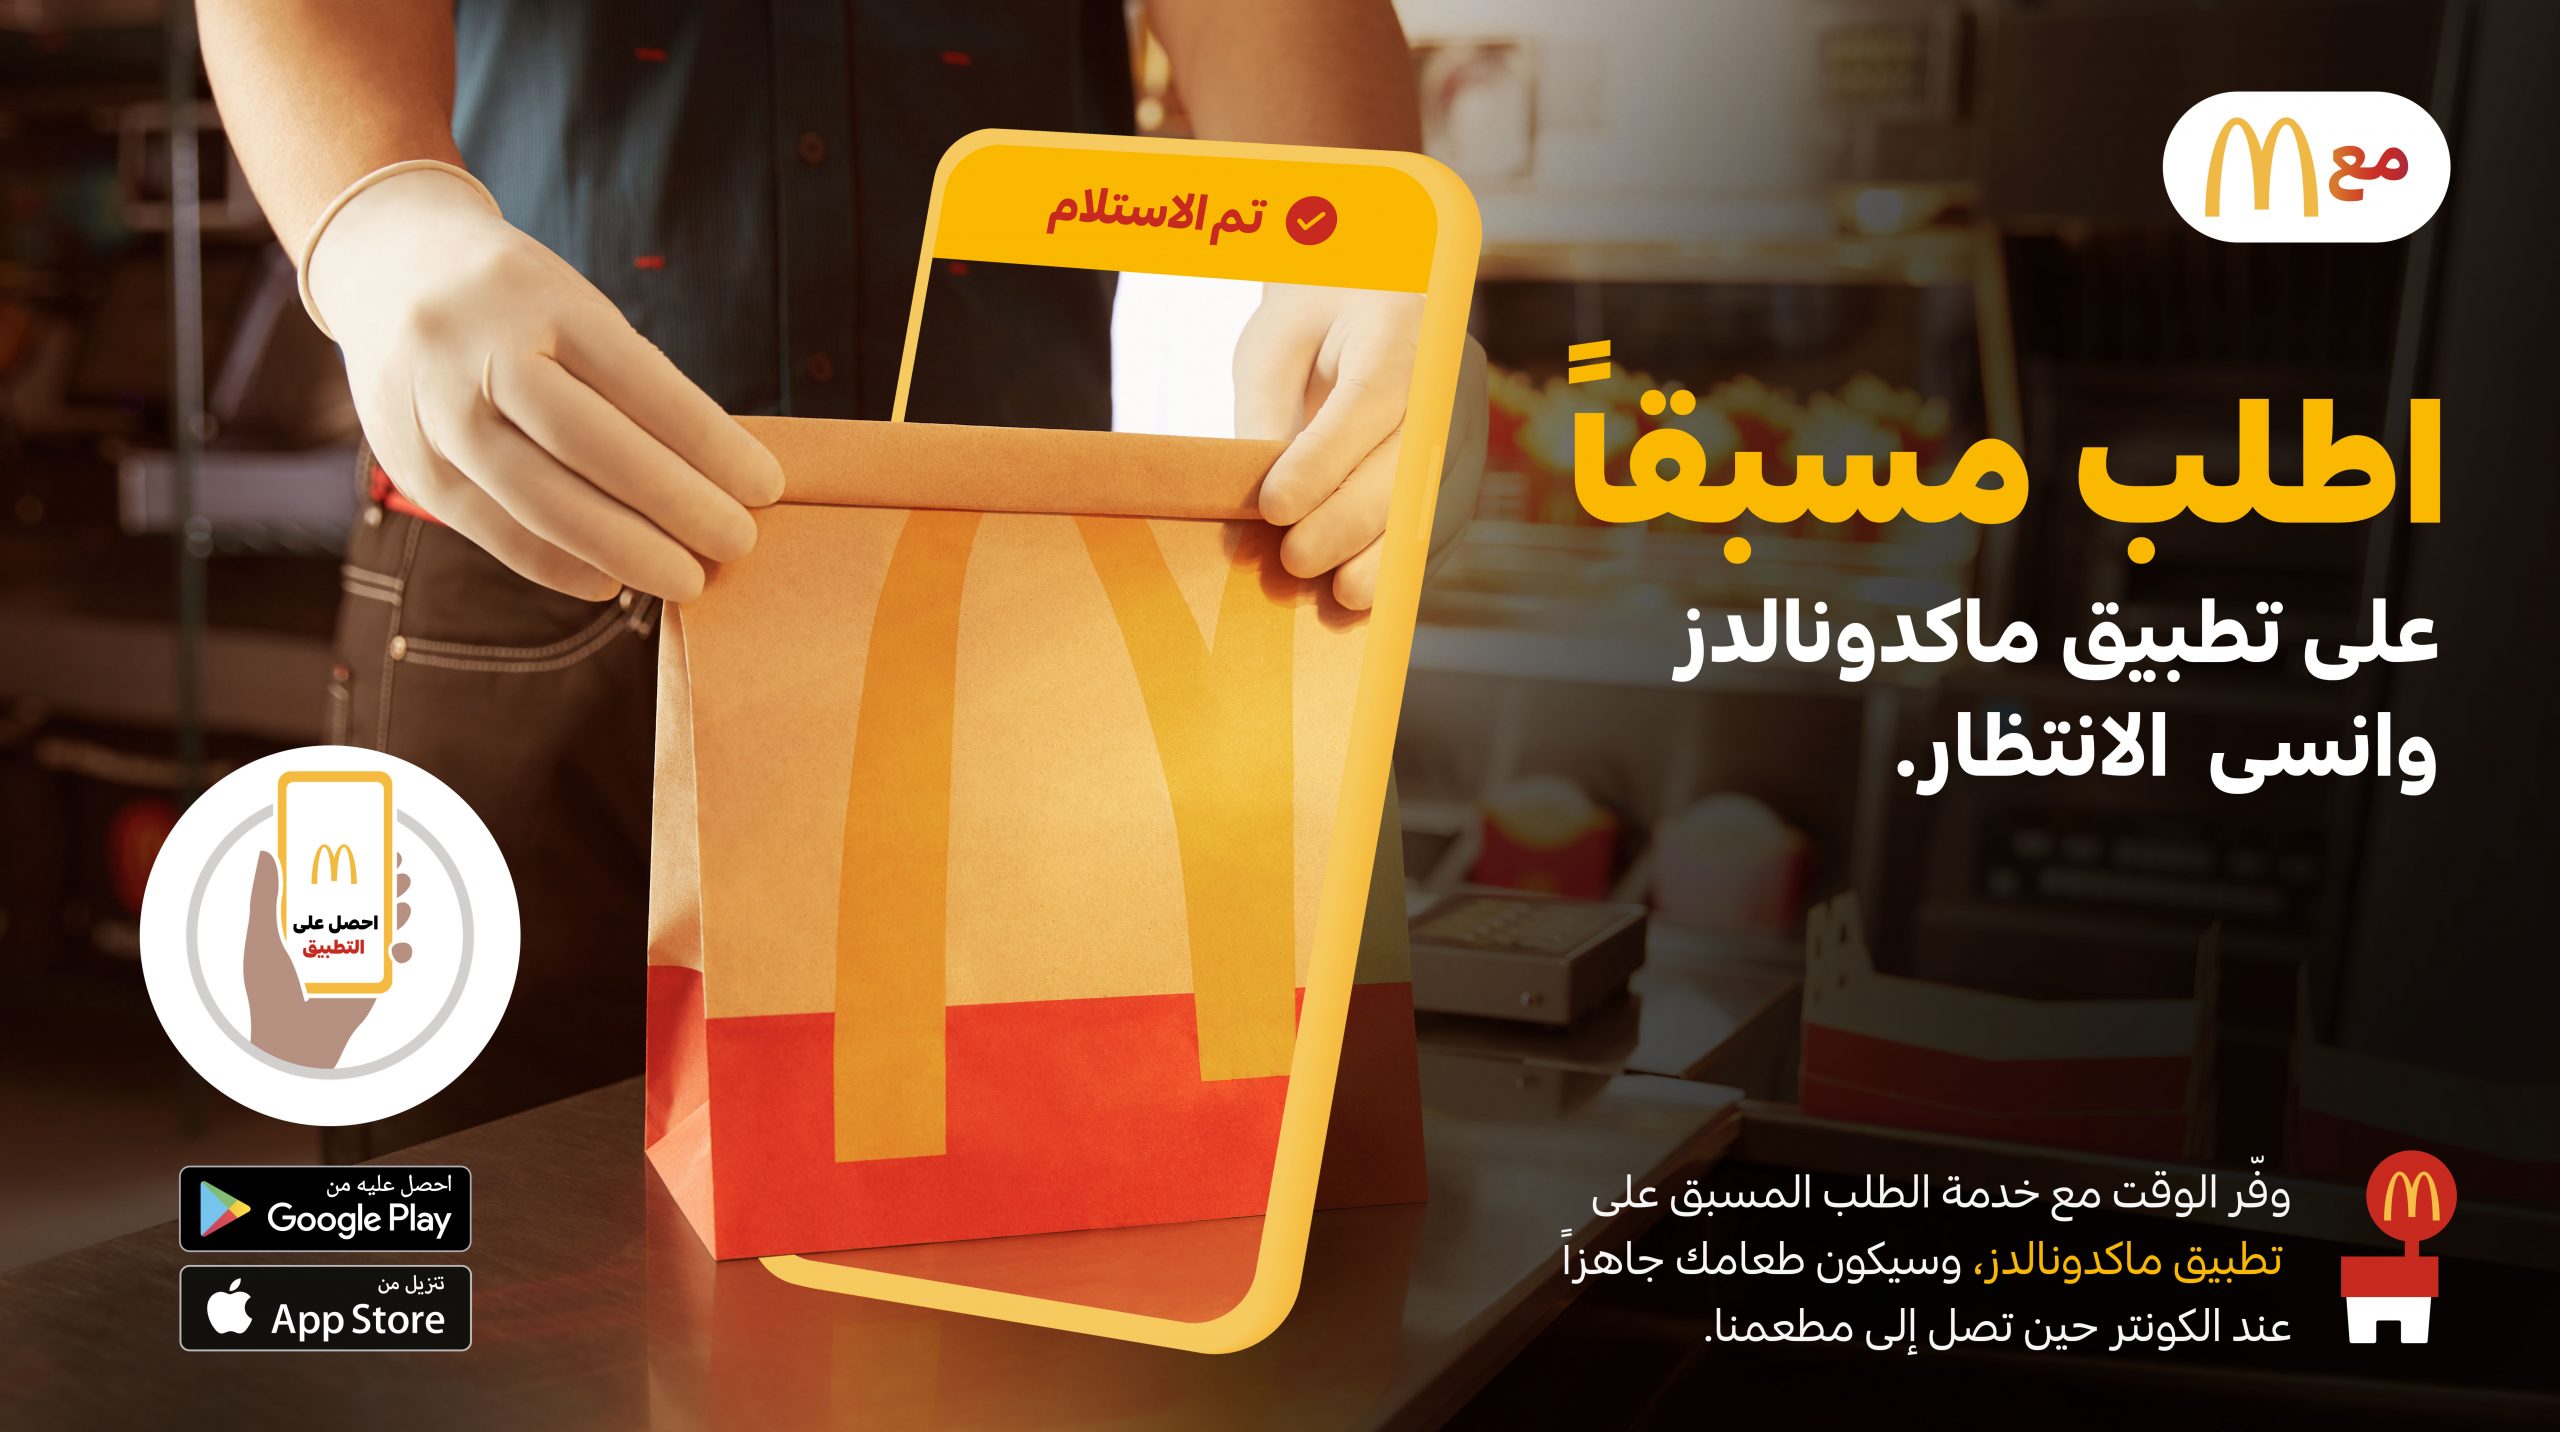 ماكدونالدز الإمارات تطلق خدمة الطلب المسبق على تطبيقها